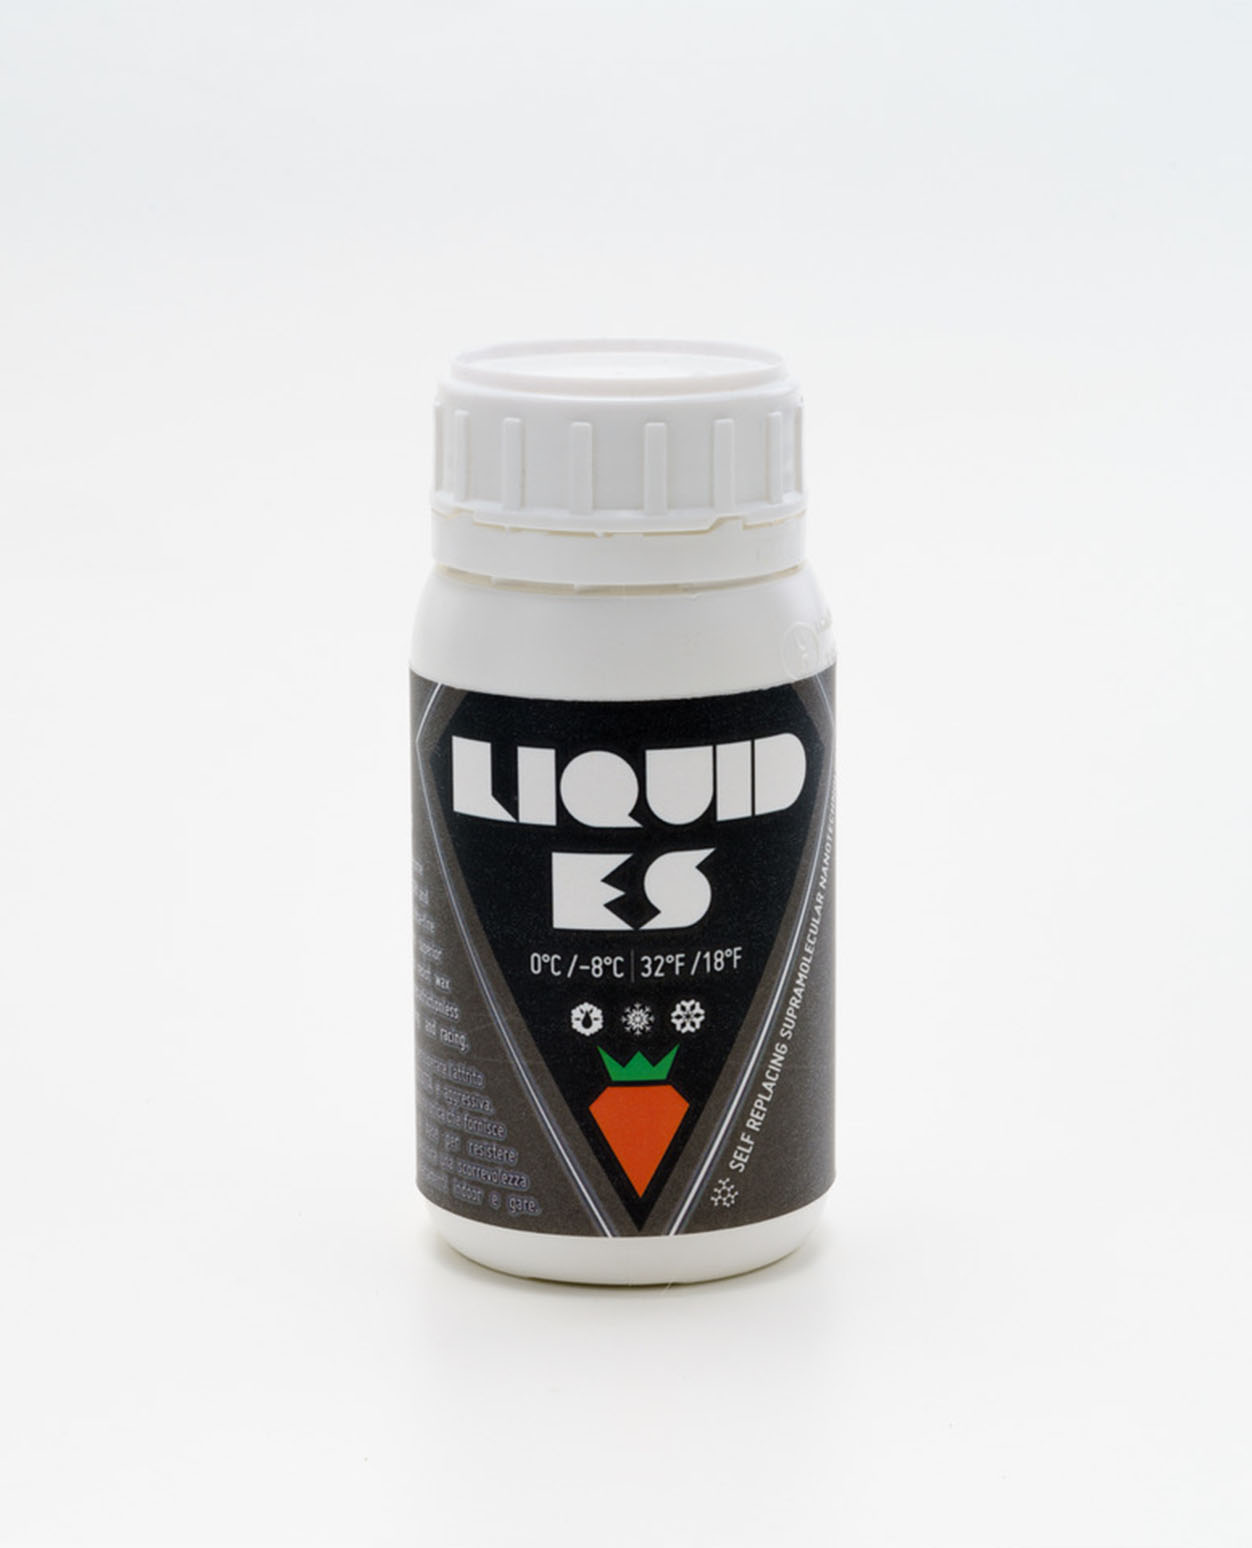 Carrot Liquid Electrostatic Surfactant 0°C/-8°C 